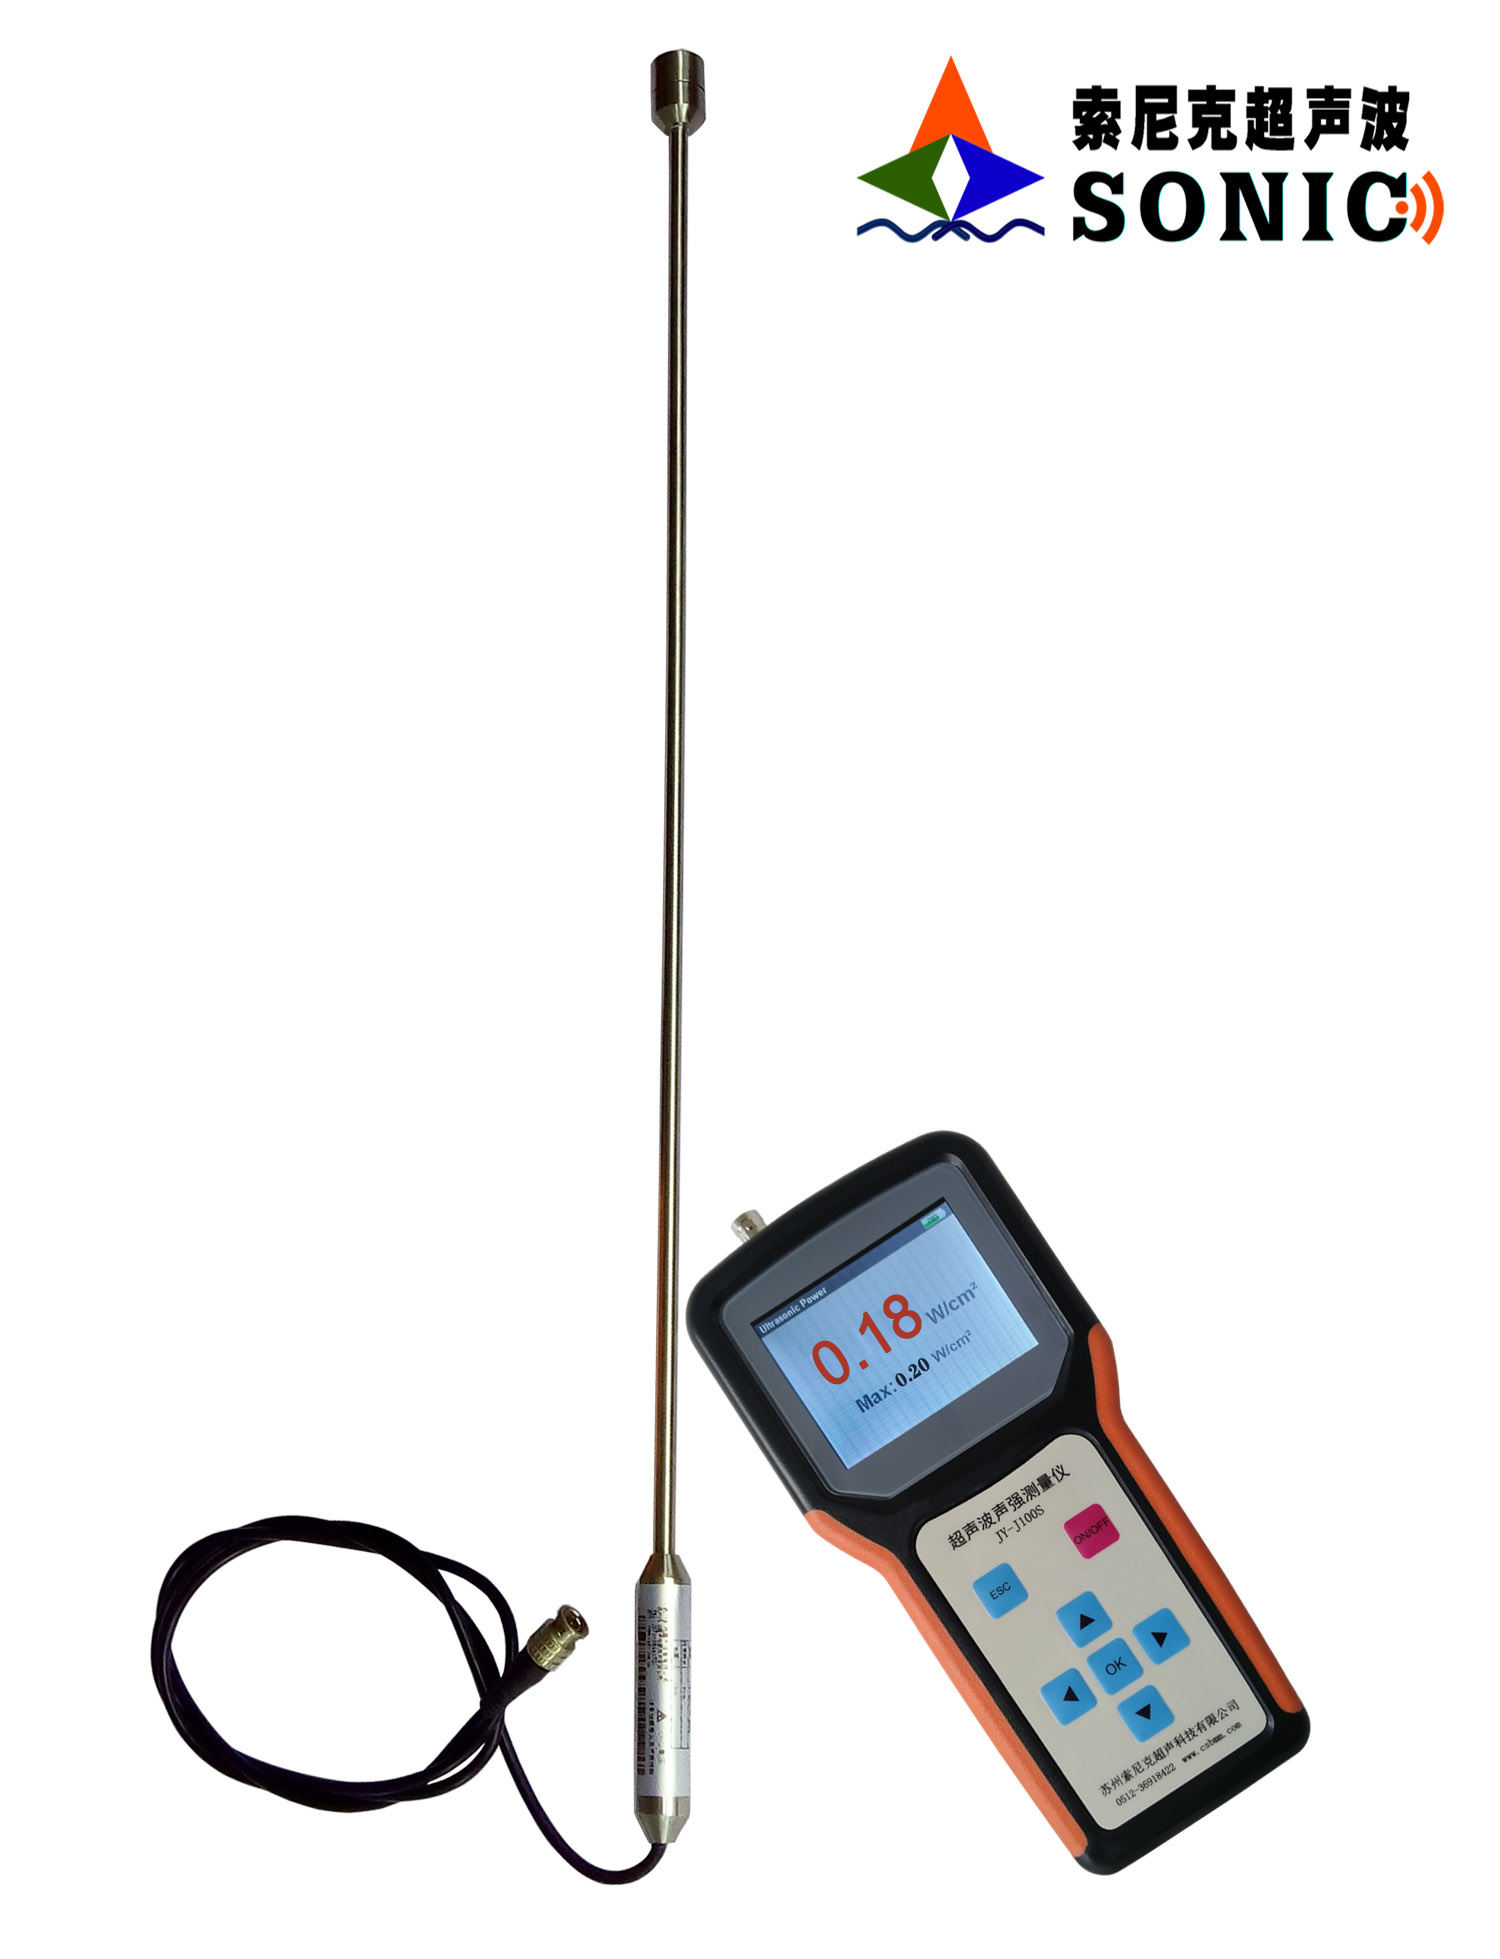 超声波声强测量仪供应,超声波声强测量仪供应商,超声波声强测量仪价格 